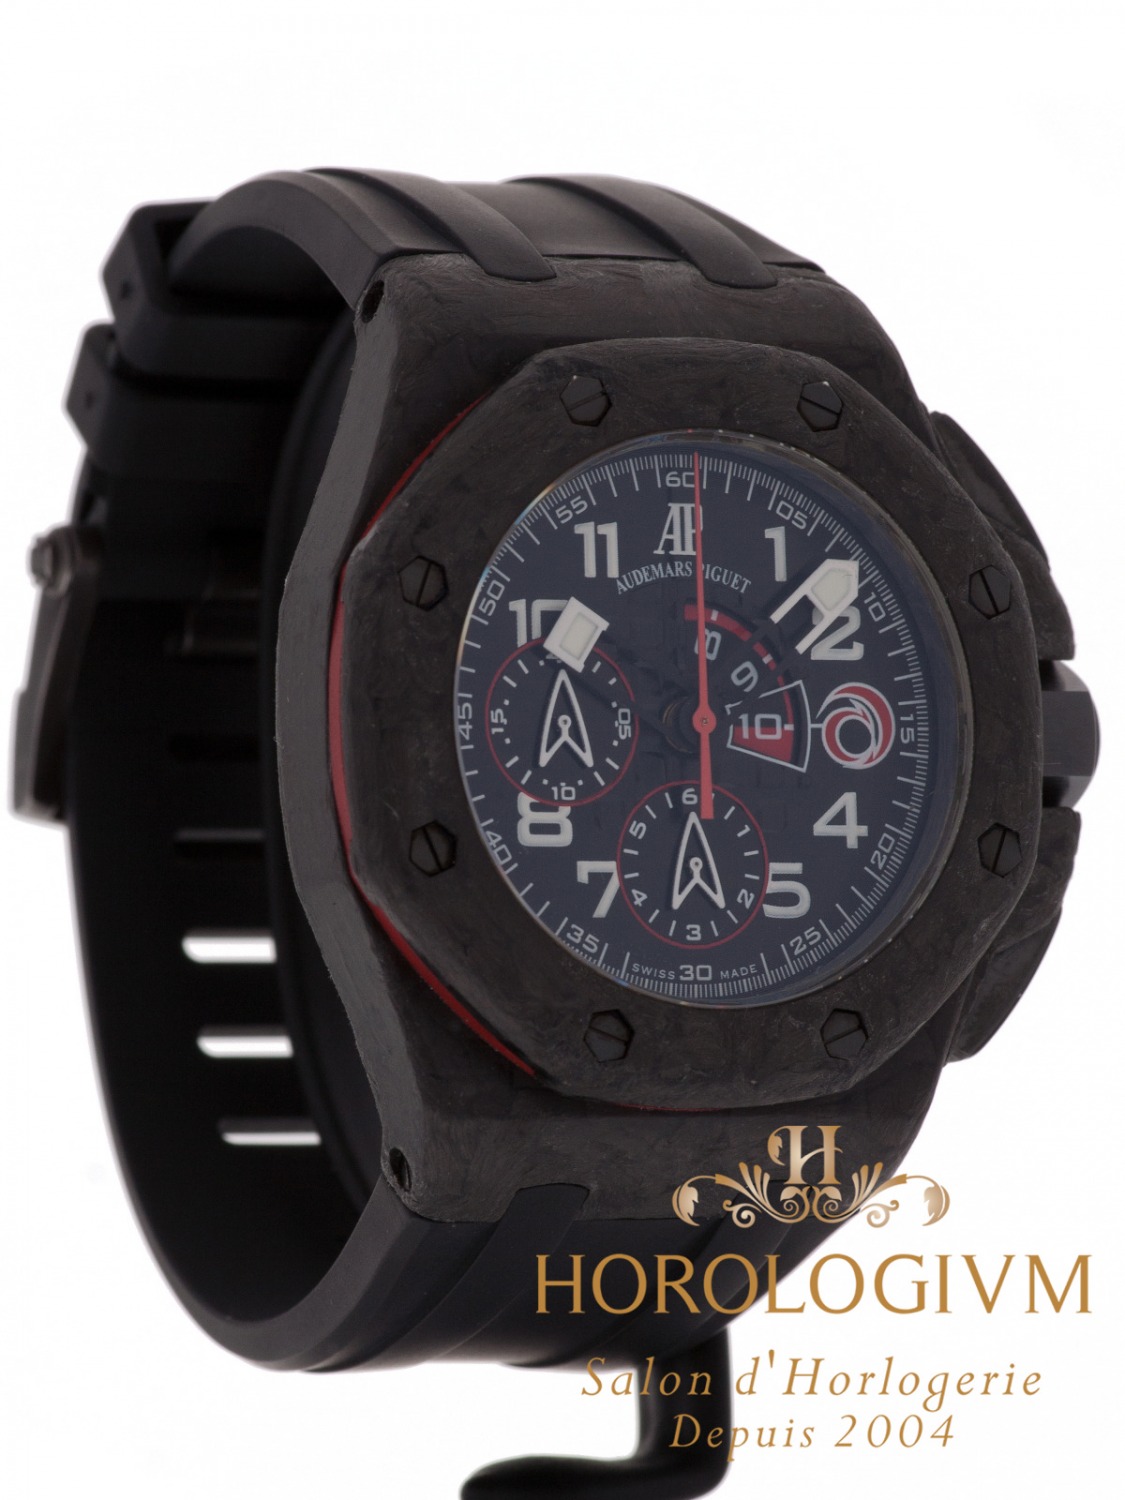 Audemars Piguet Royal Oak Offshore Carbon Alinghi Team Limited 1300 pcs watch, matte black